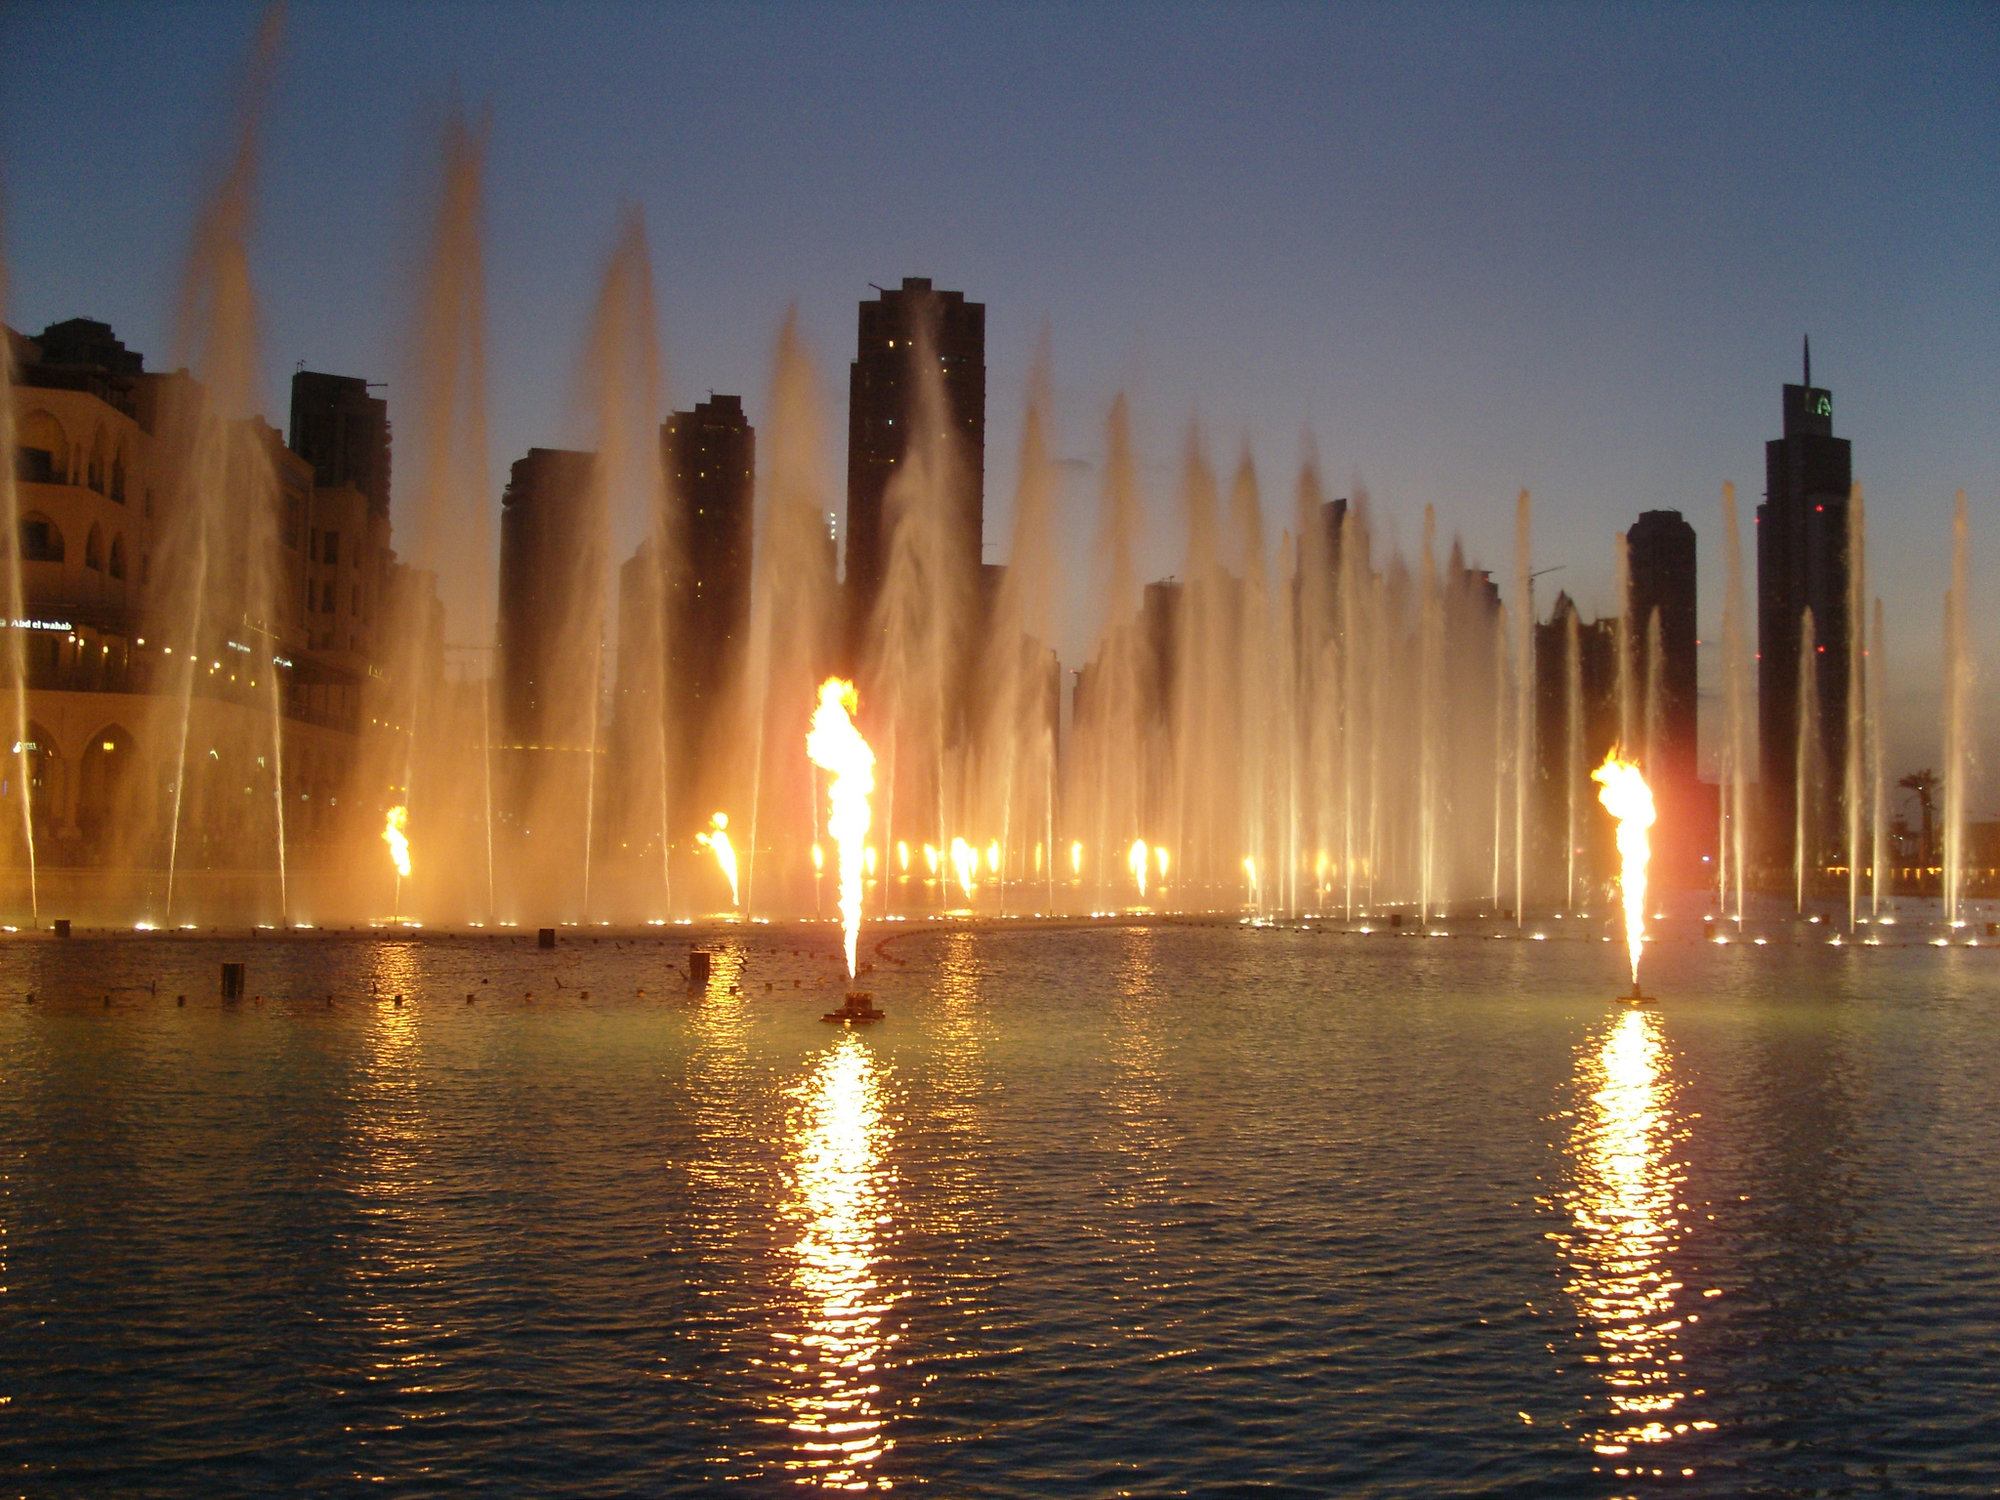 Дубайские фонтаны. Поющие фонтаны Бурдж Халифа. Шоу фонтанов в Дубае Бурдж Халифа. Музыкальный фонтан в Дубае. Бурдж Халифа шоу фонтанов.